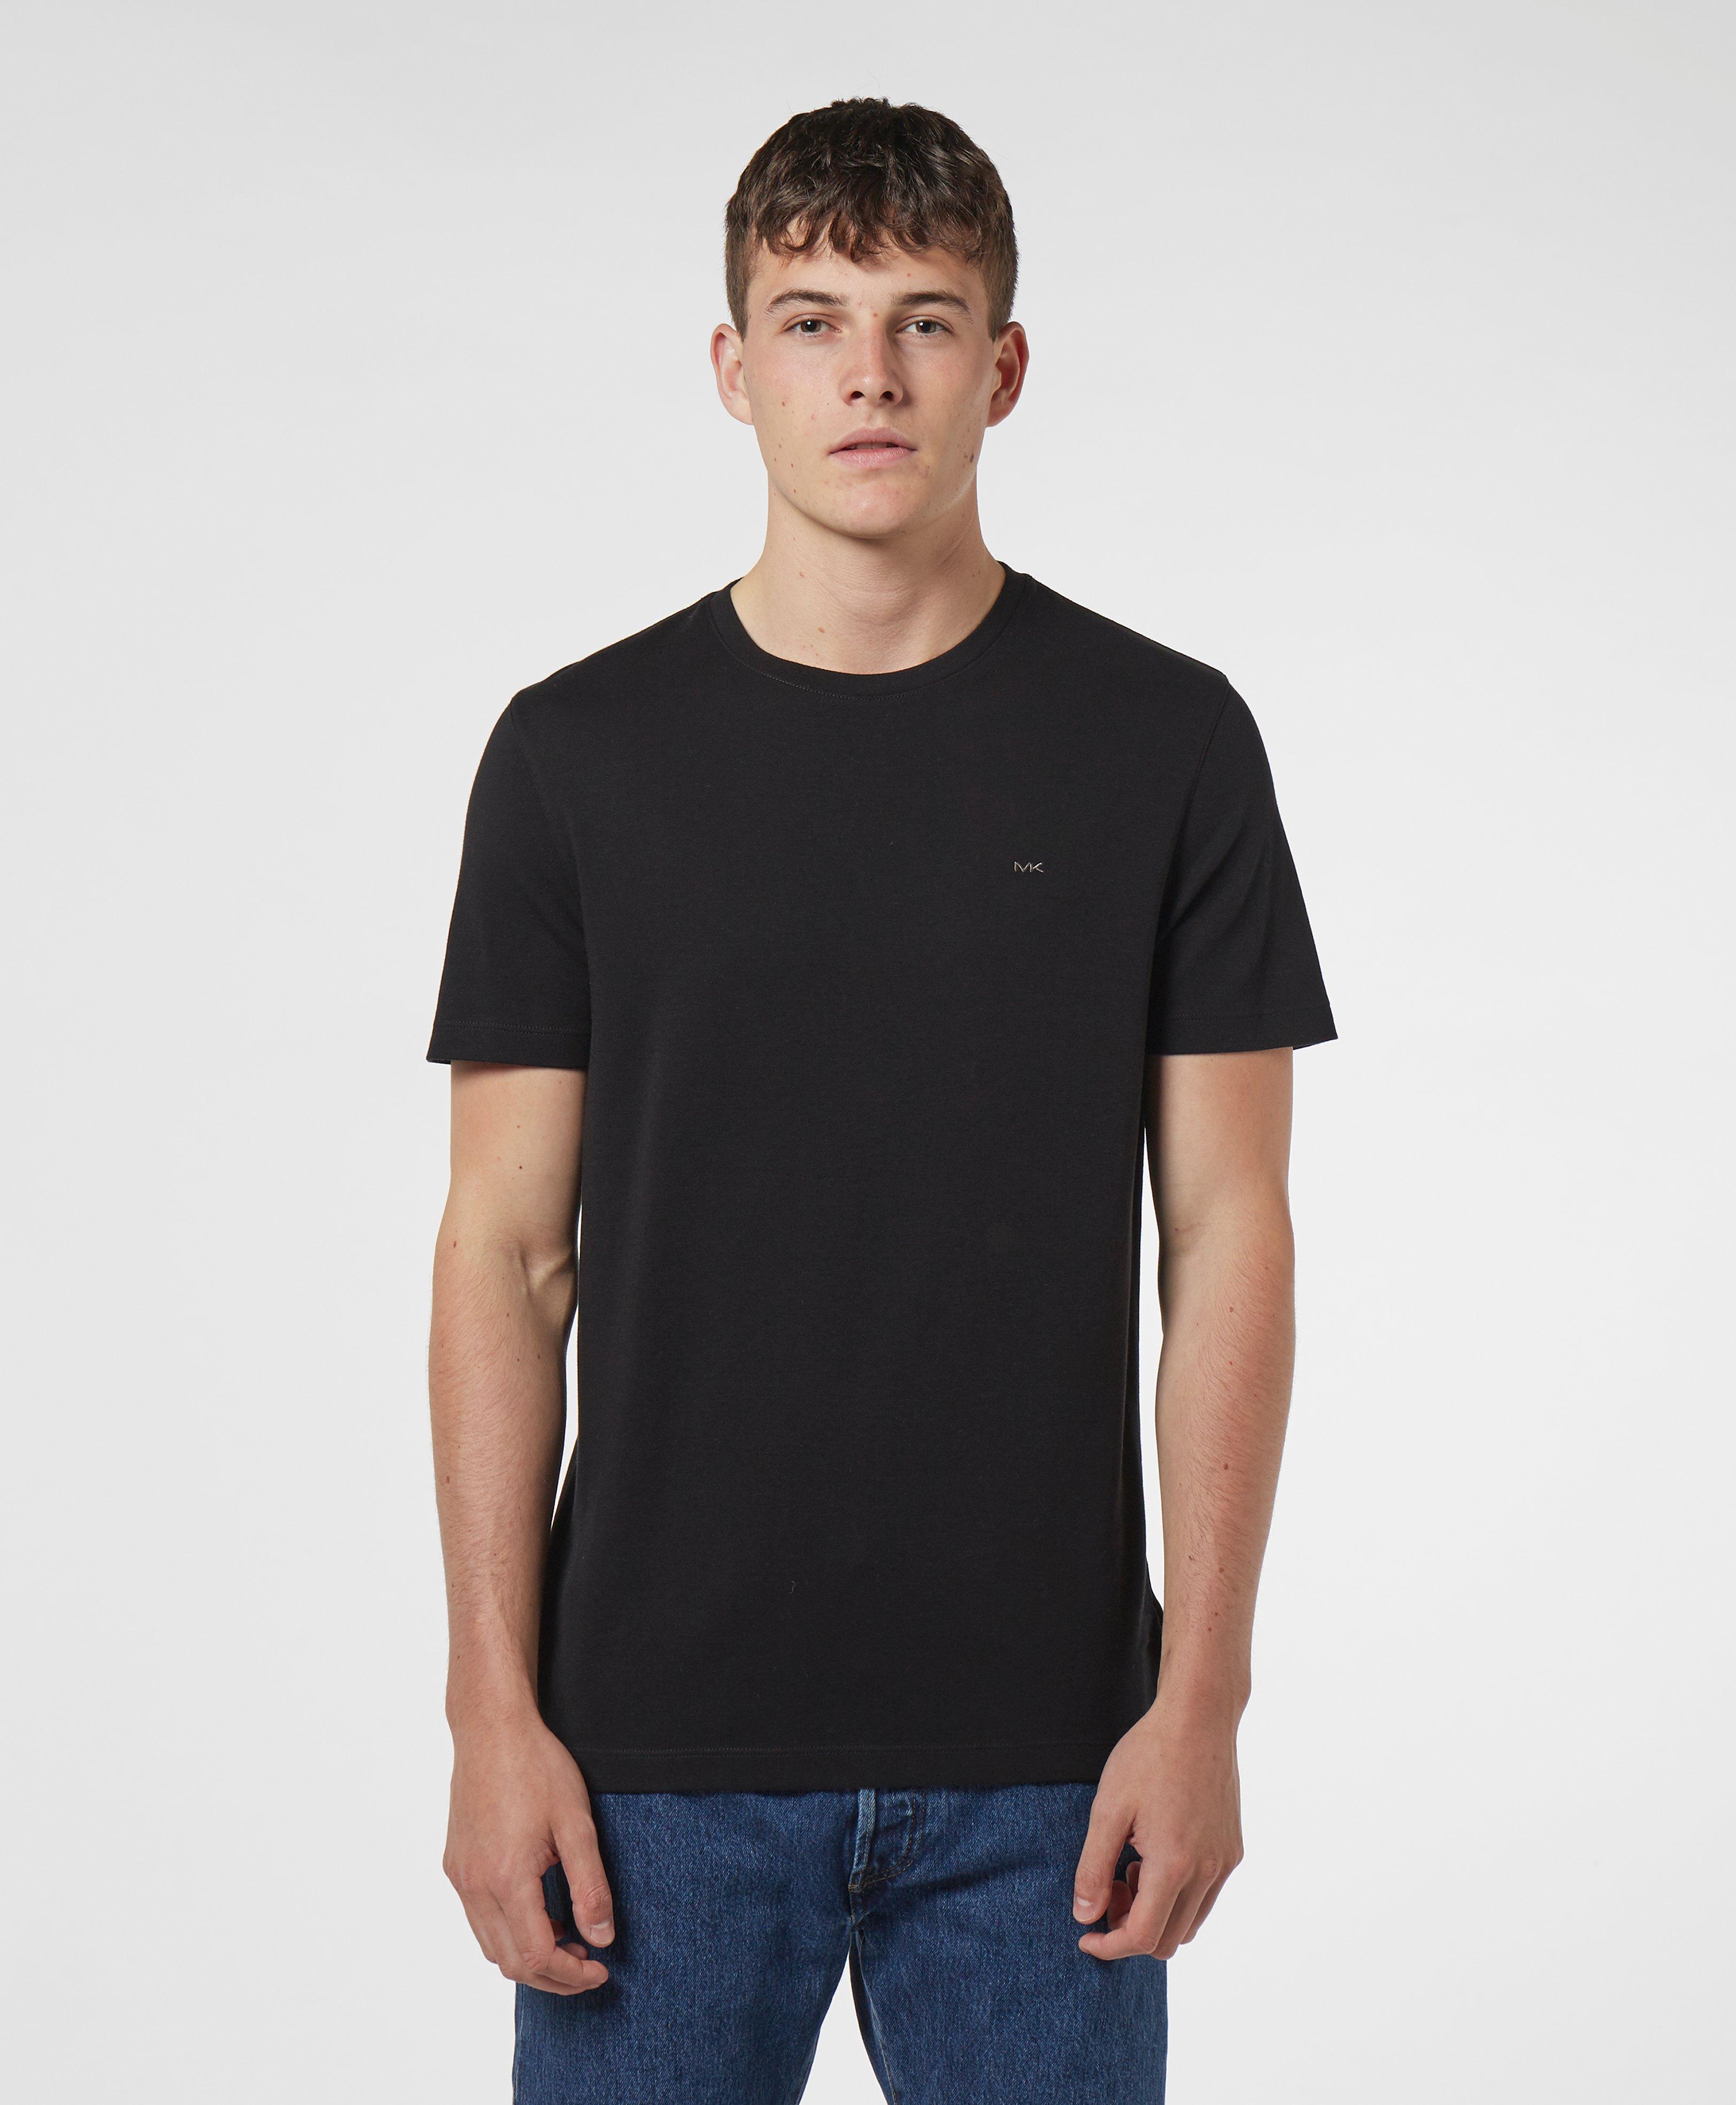 Michael Kors Cotton Sleek Short Sleeve T-shirt in Black for Men - Lyst